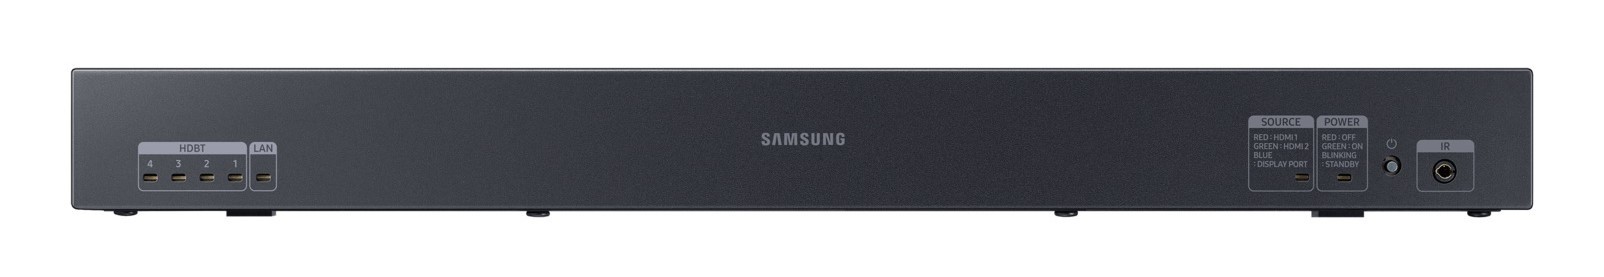 Samsung SNOW-1810U Nero Tizen 4.0 2,8 kg